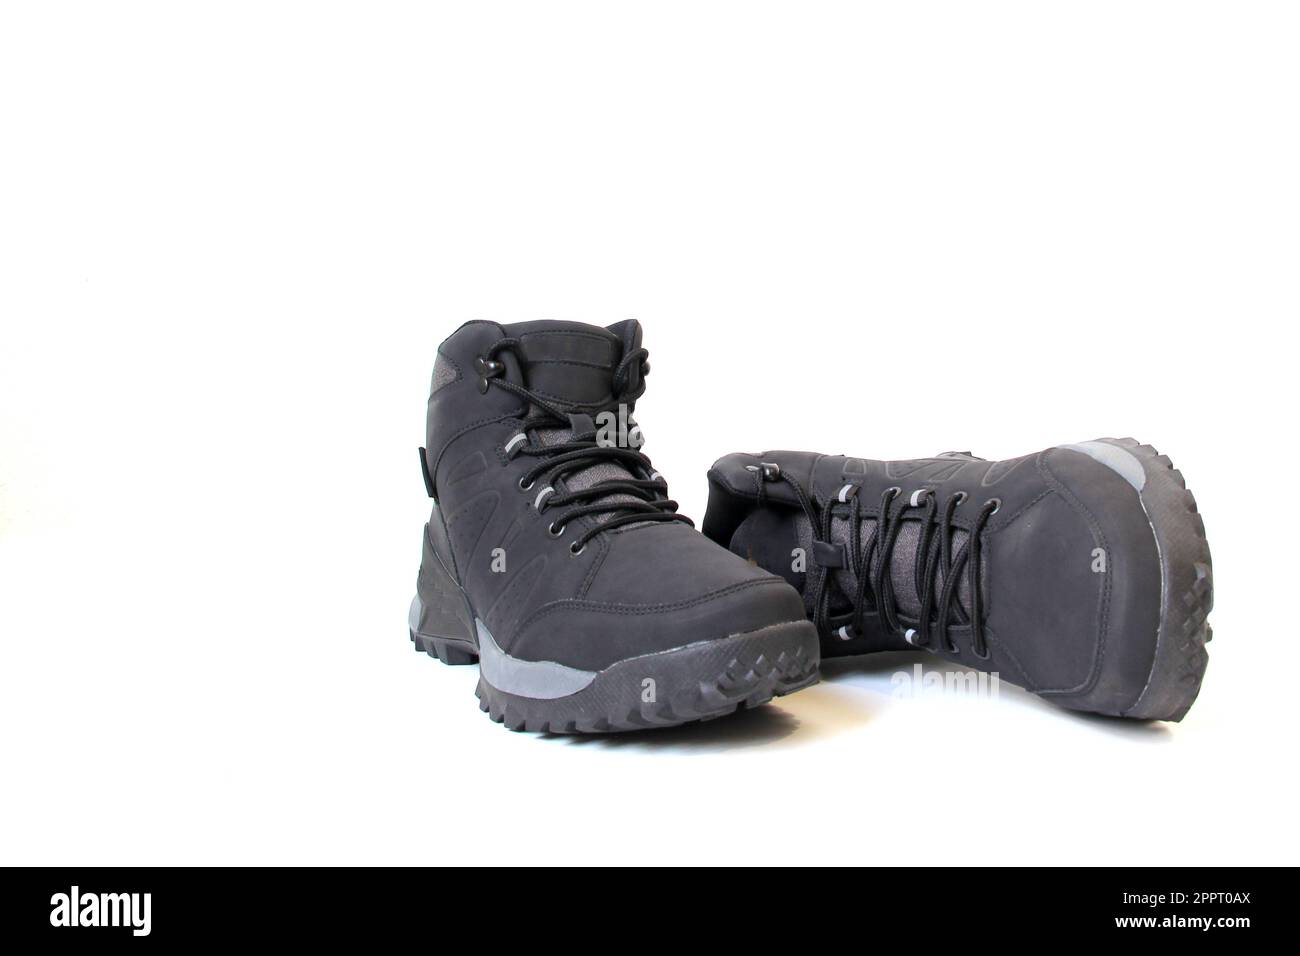 Chaussures de randonnée pour hommes ou femmes qui veulent faire des promenades en montagne avec une semelle antidérapante ferme qui donne la stabilité et la liberté de mouvement pour l'aventure Banque D'Images